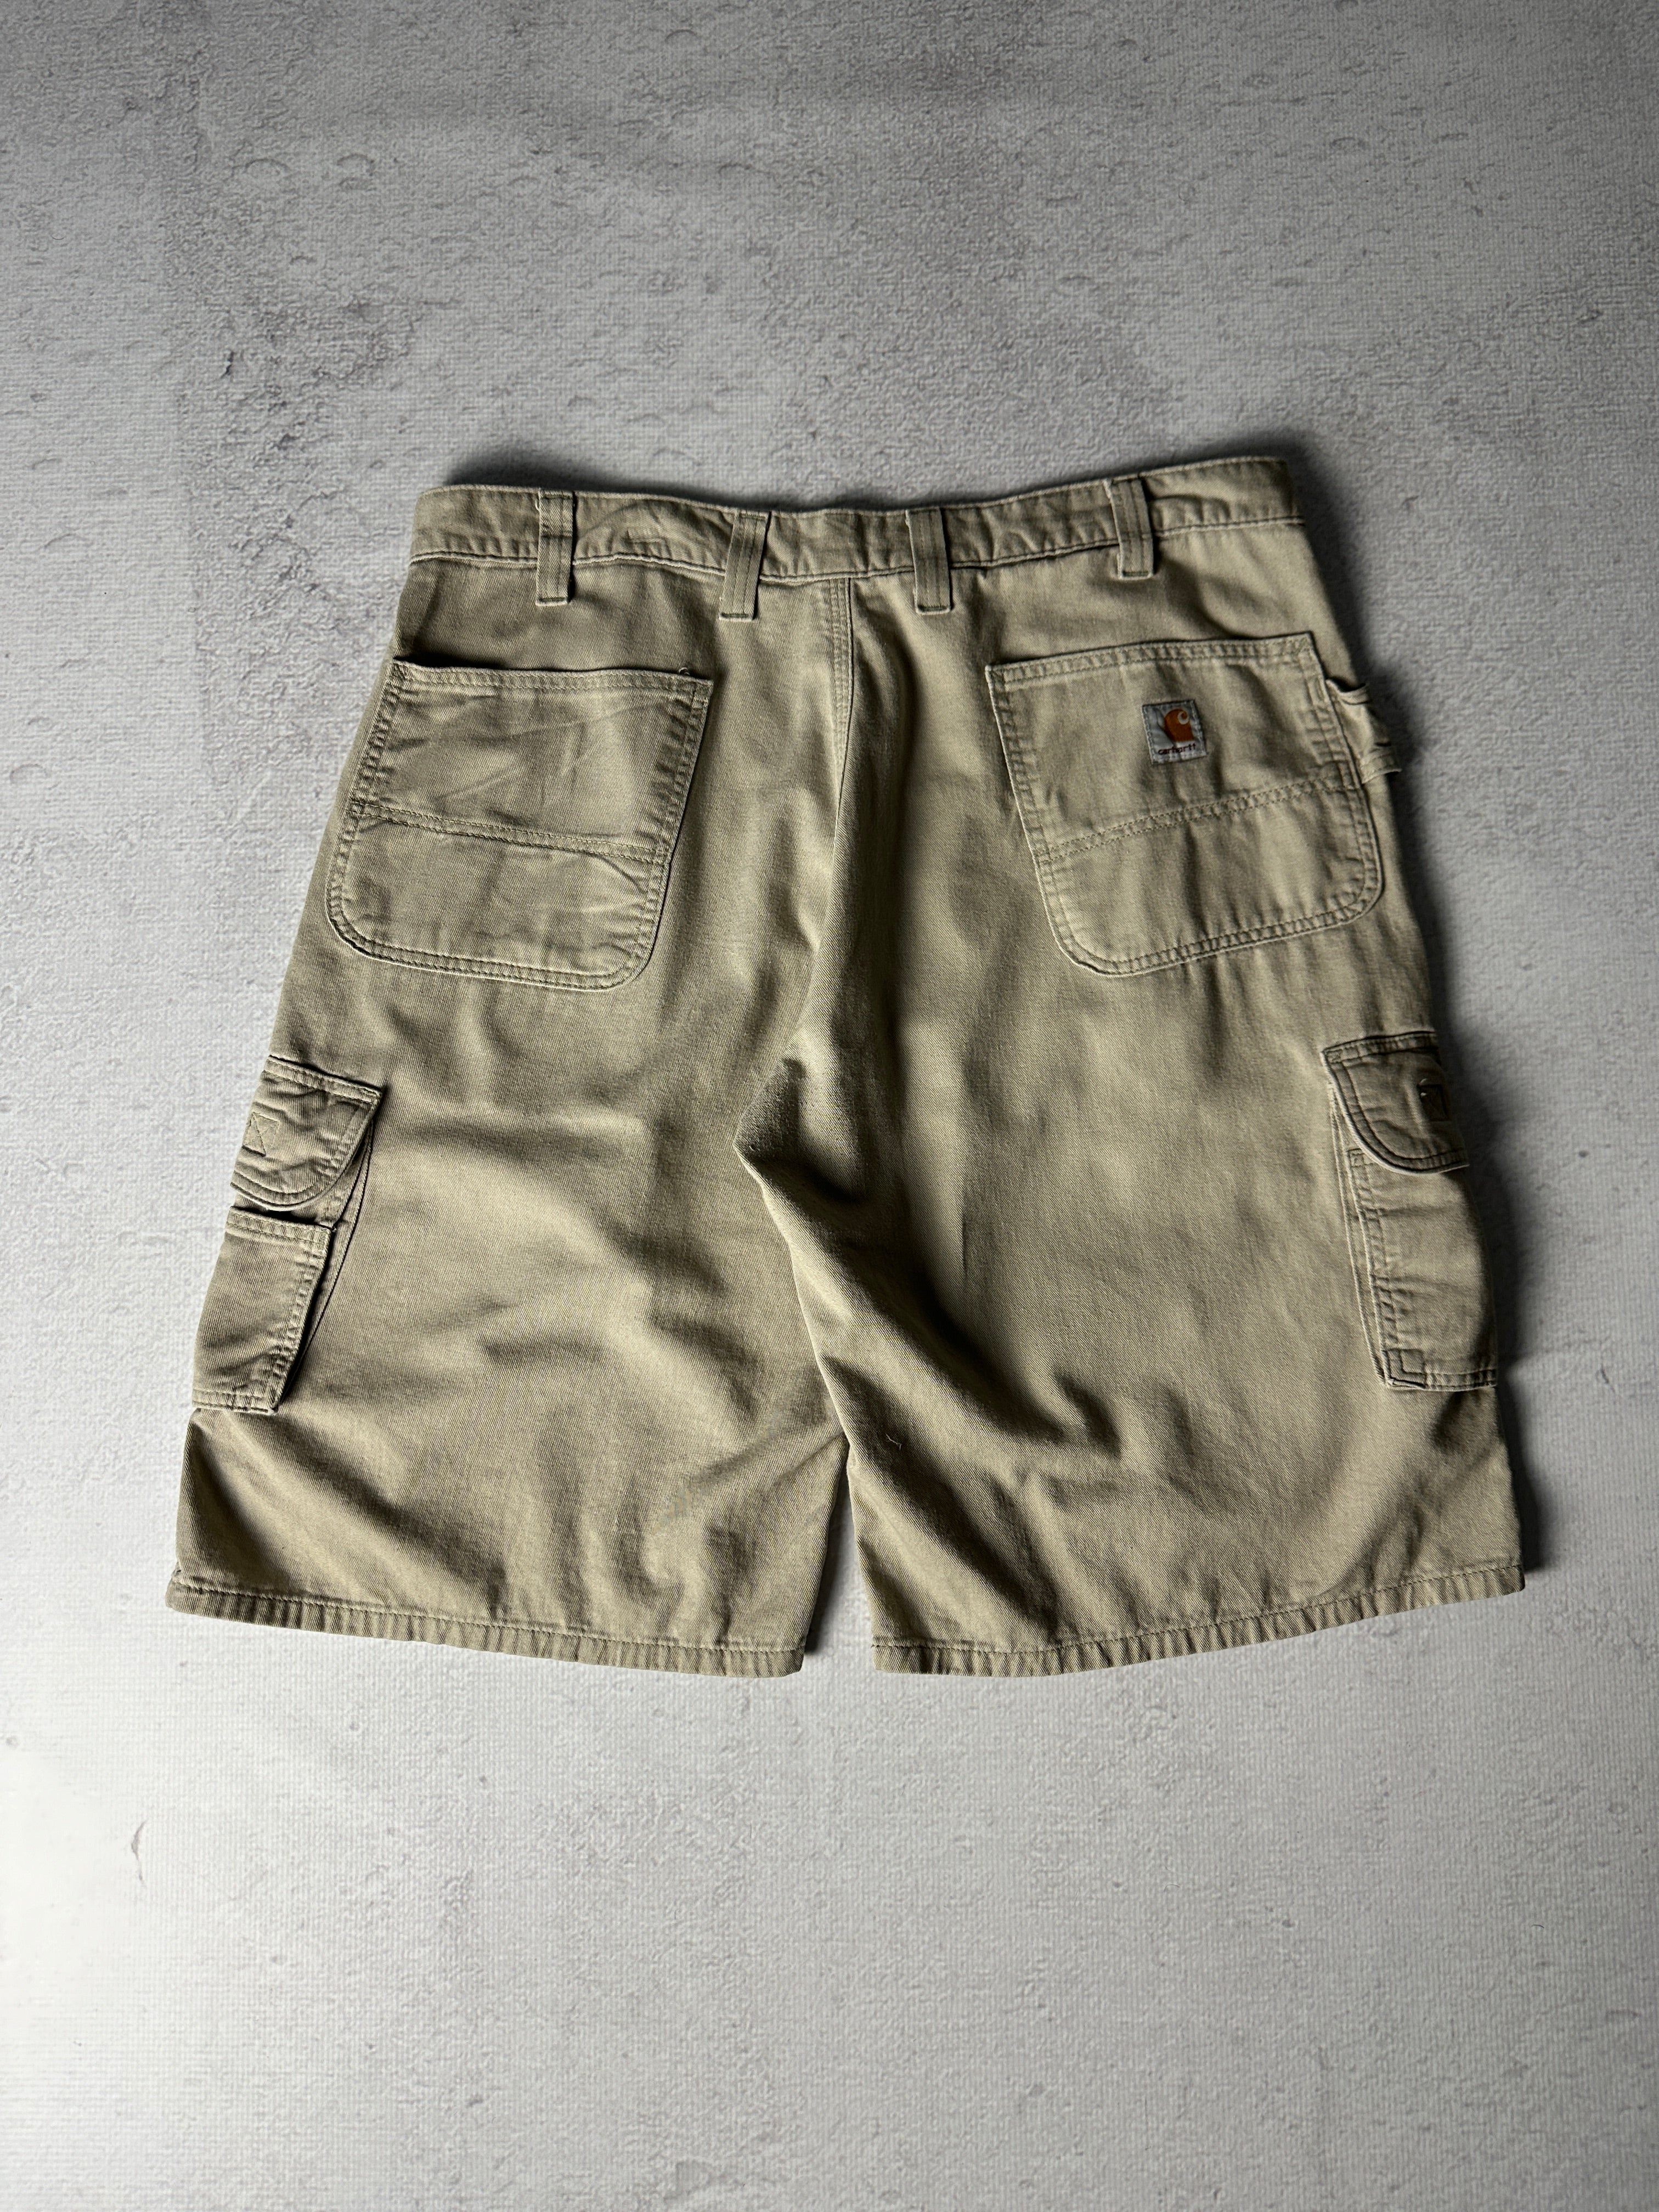 Vintage Carhartt Cargo Shorts - Men's 38